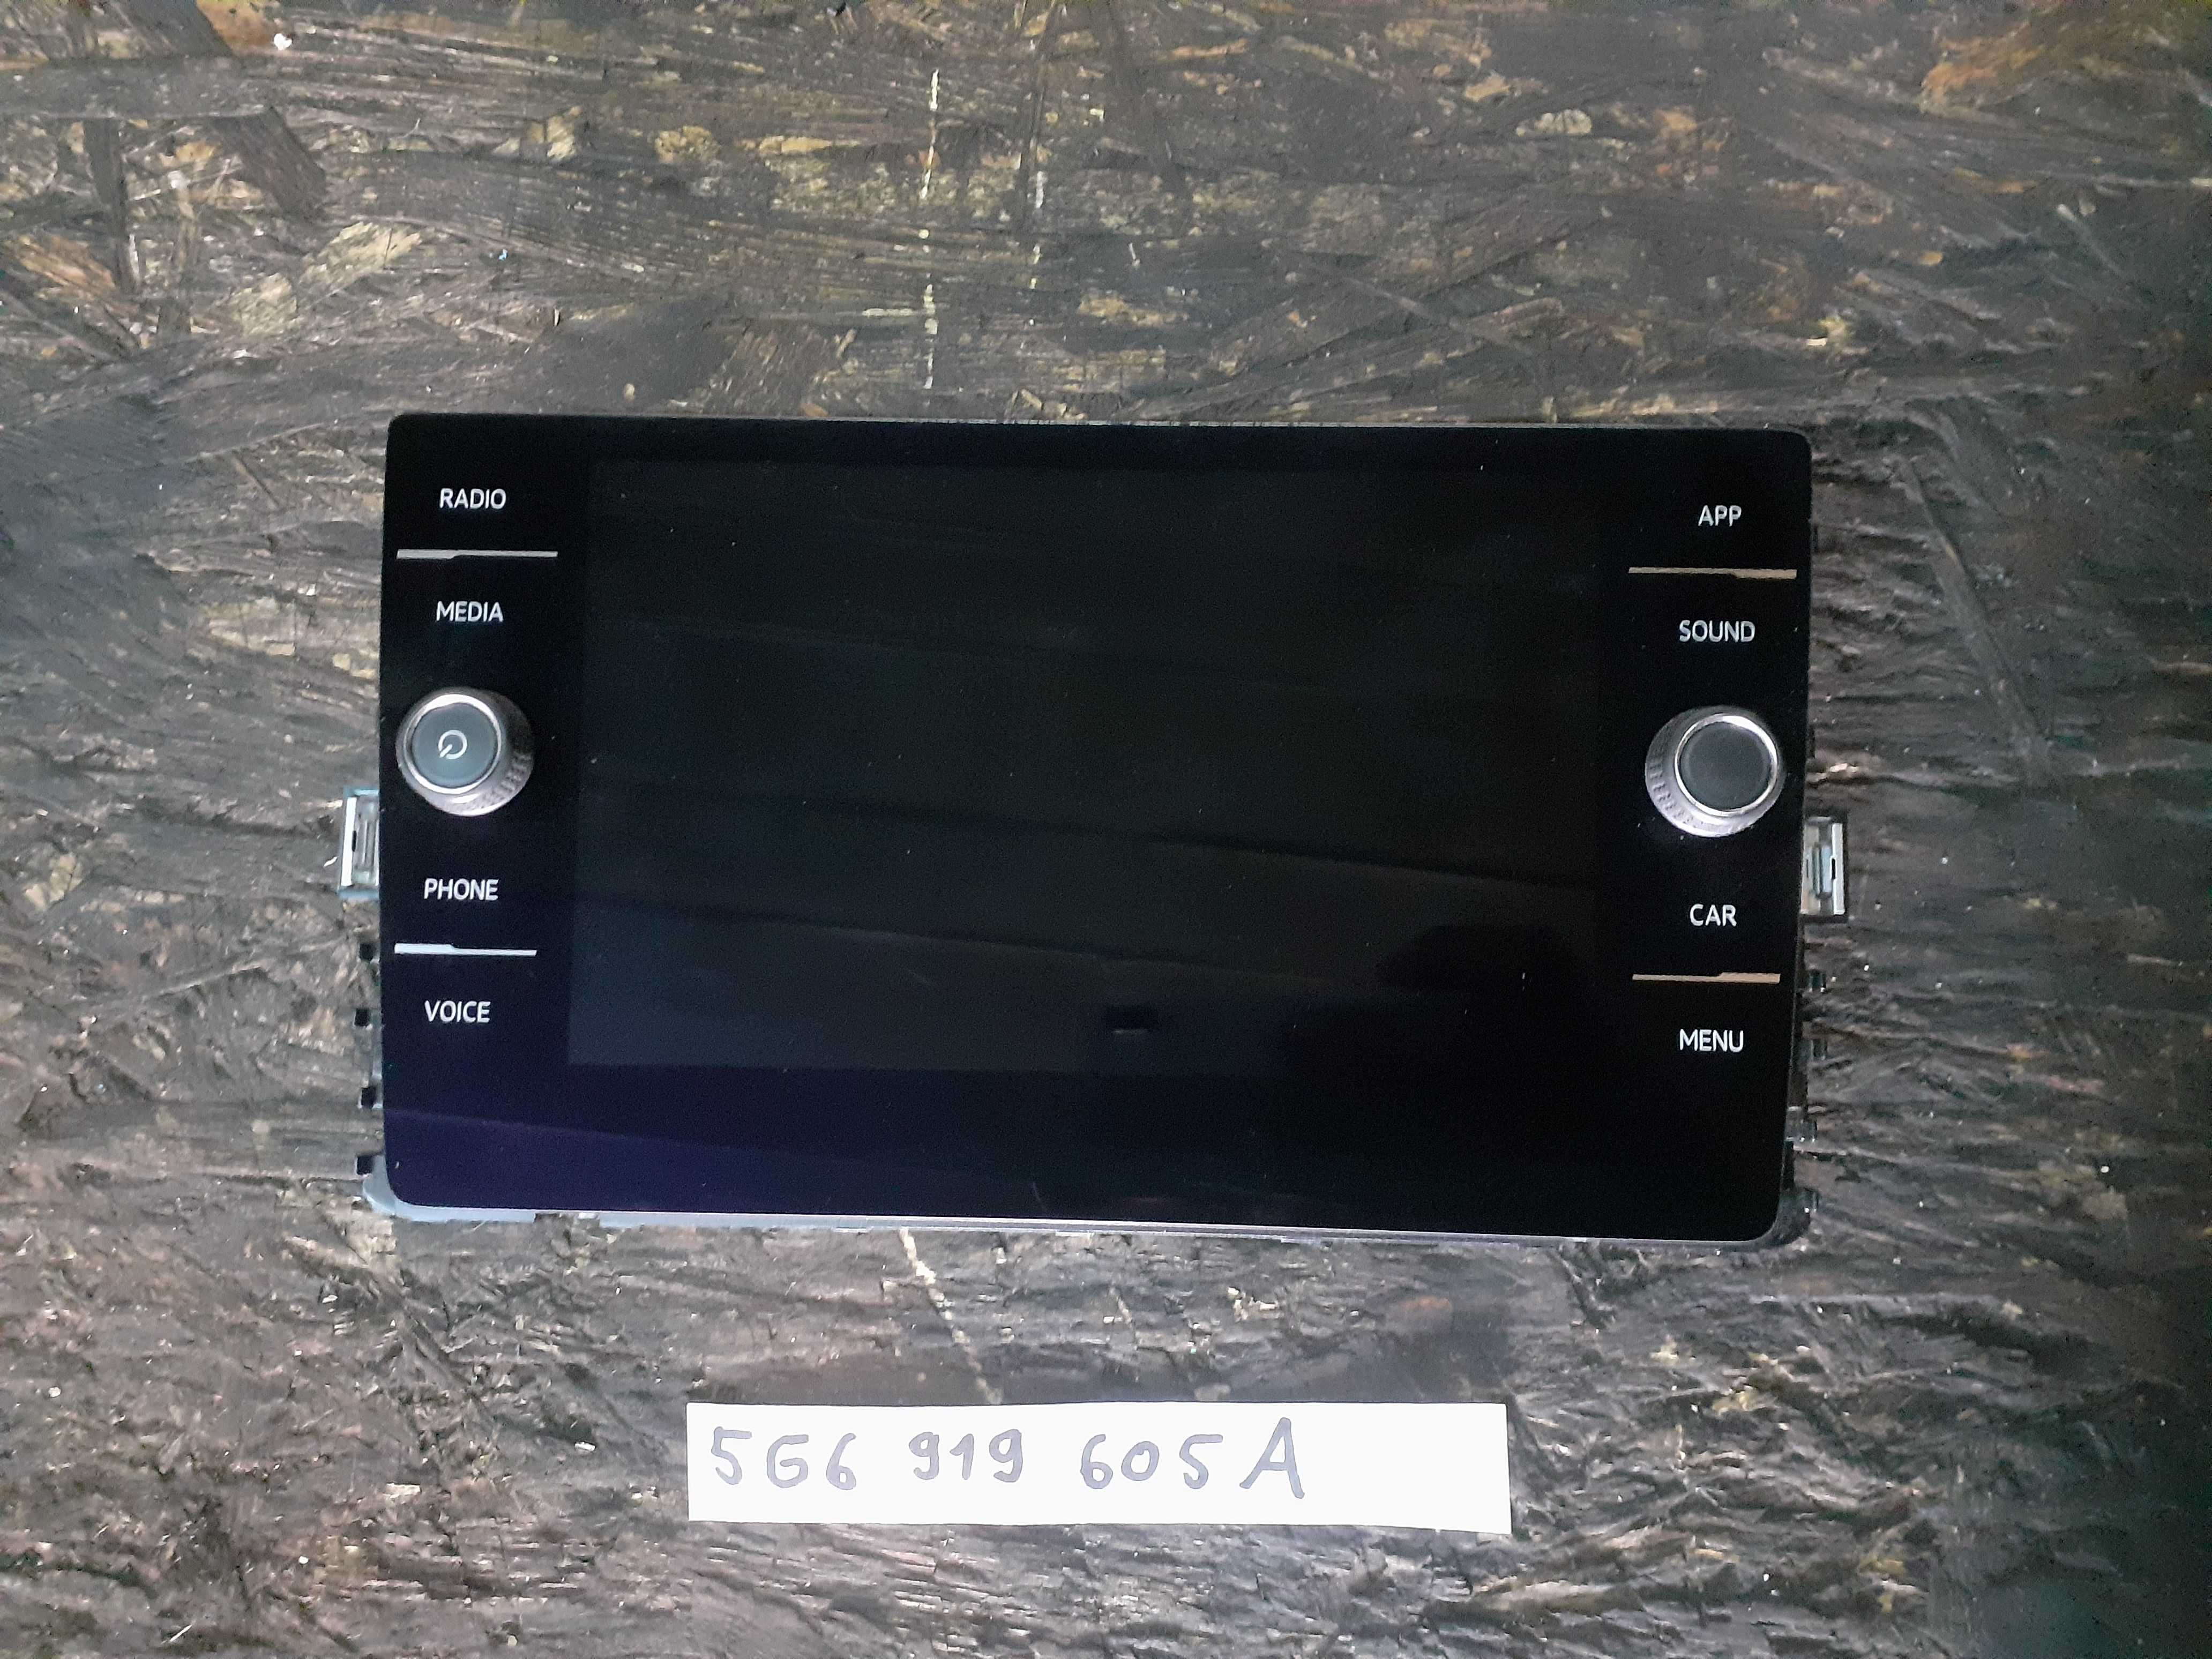 Display navigatie MIB2 touch VW 5G6919605A Golf7, Passat B8, Tiguan